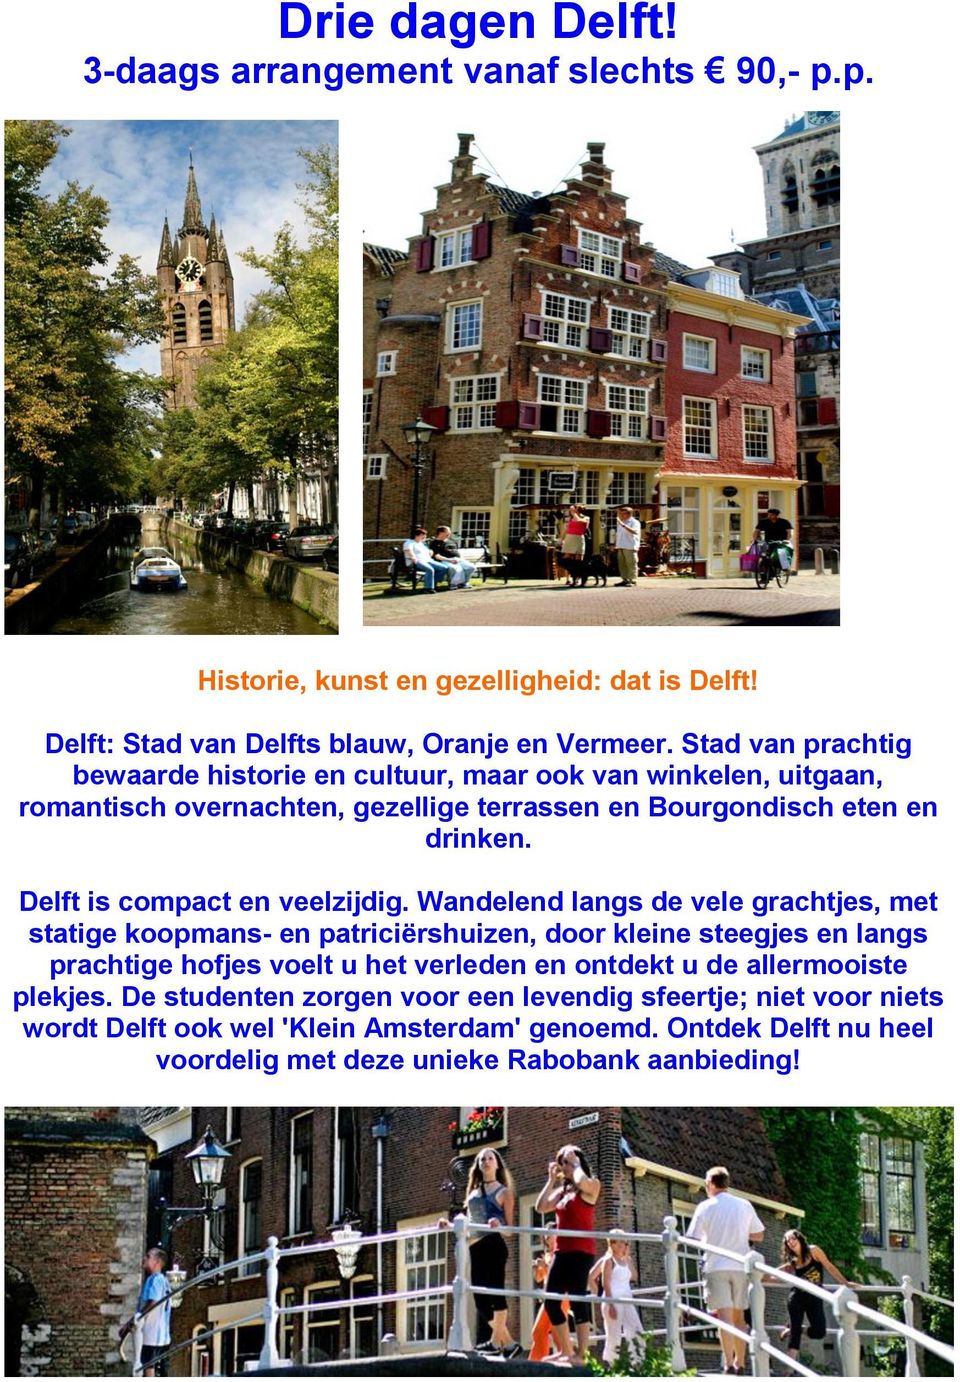 Delft is compact en veelzijdig.